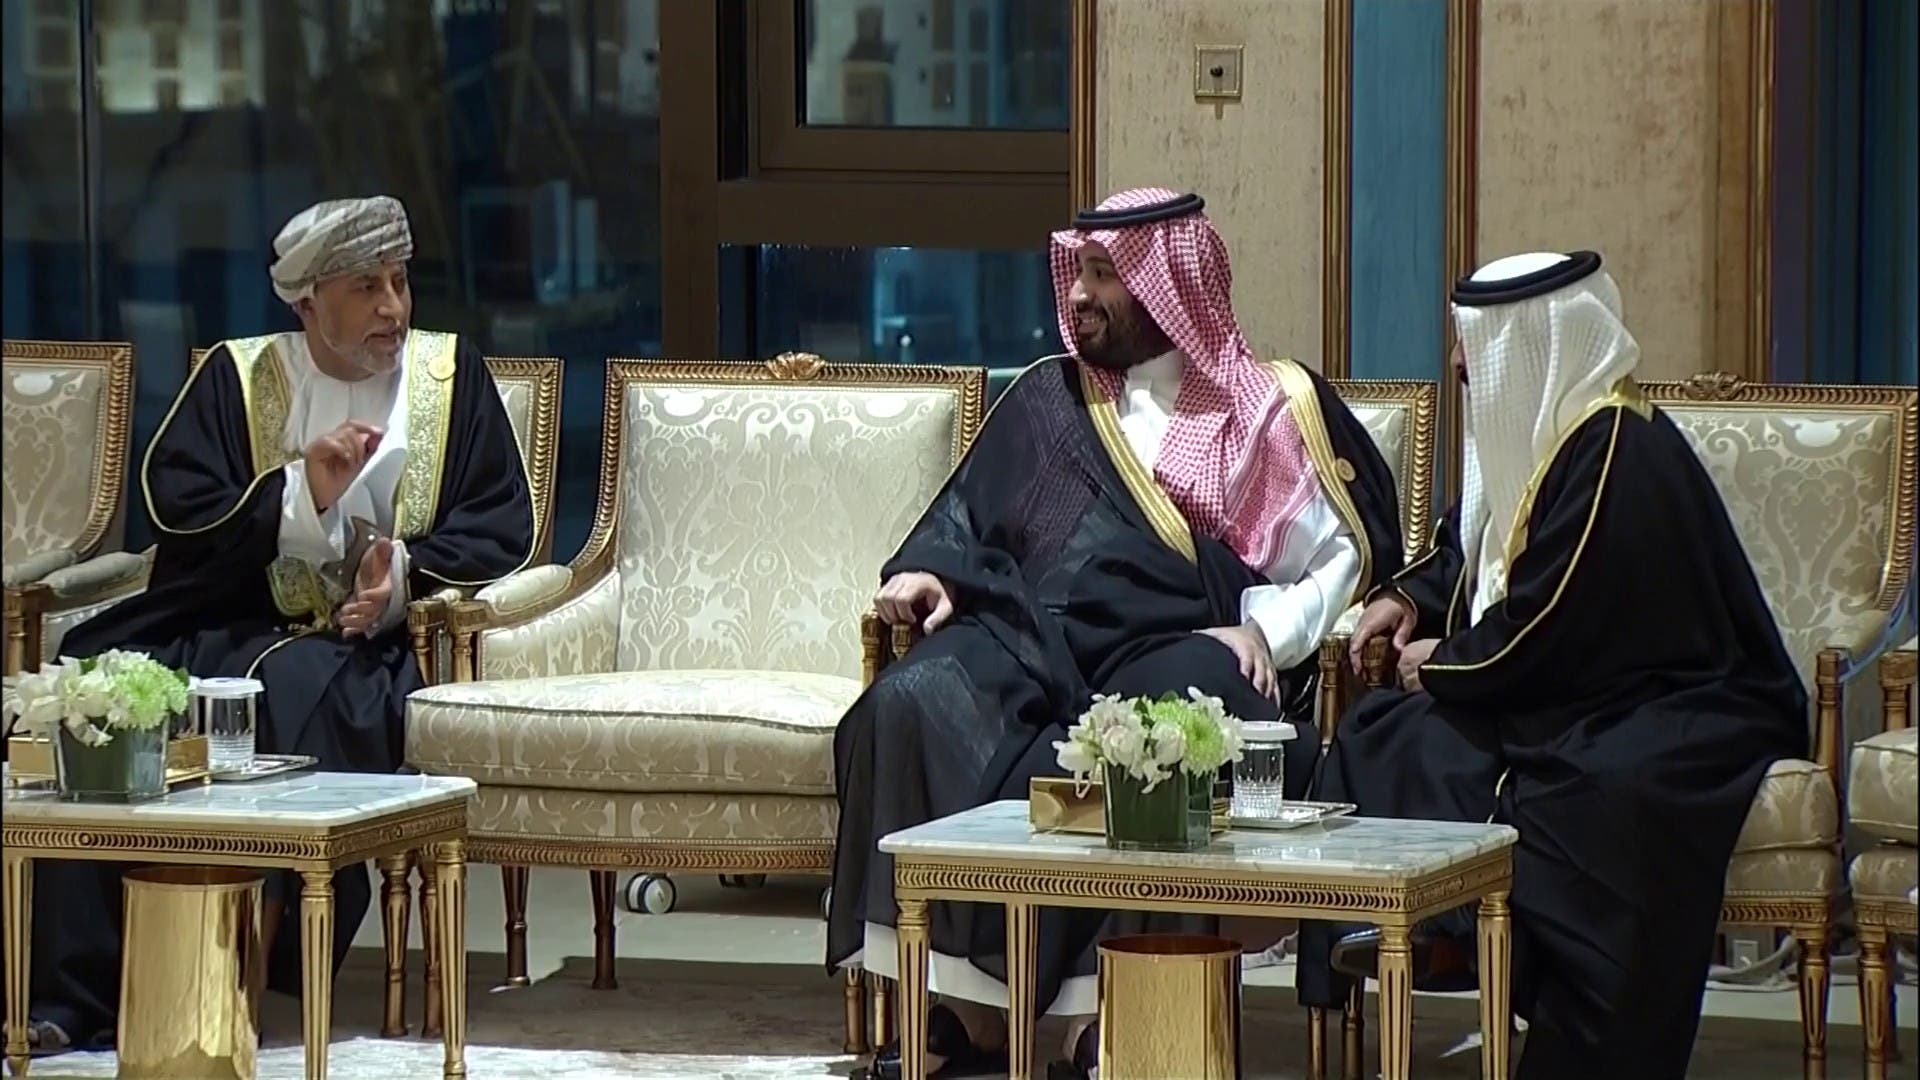 وردنا قبل قليل..الملك سلمان يستقبل قادة الخليج في قصر الصفا وهذا ما يحدث الان في مكة المكرمة واليمن تحتل الصدارة "صور"